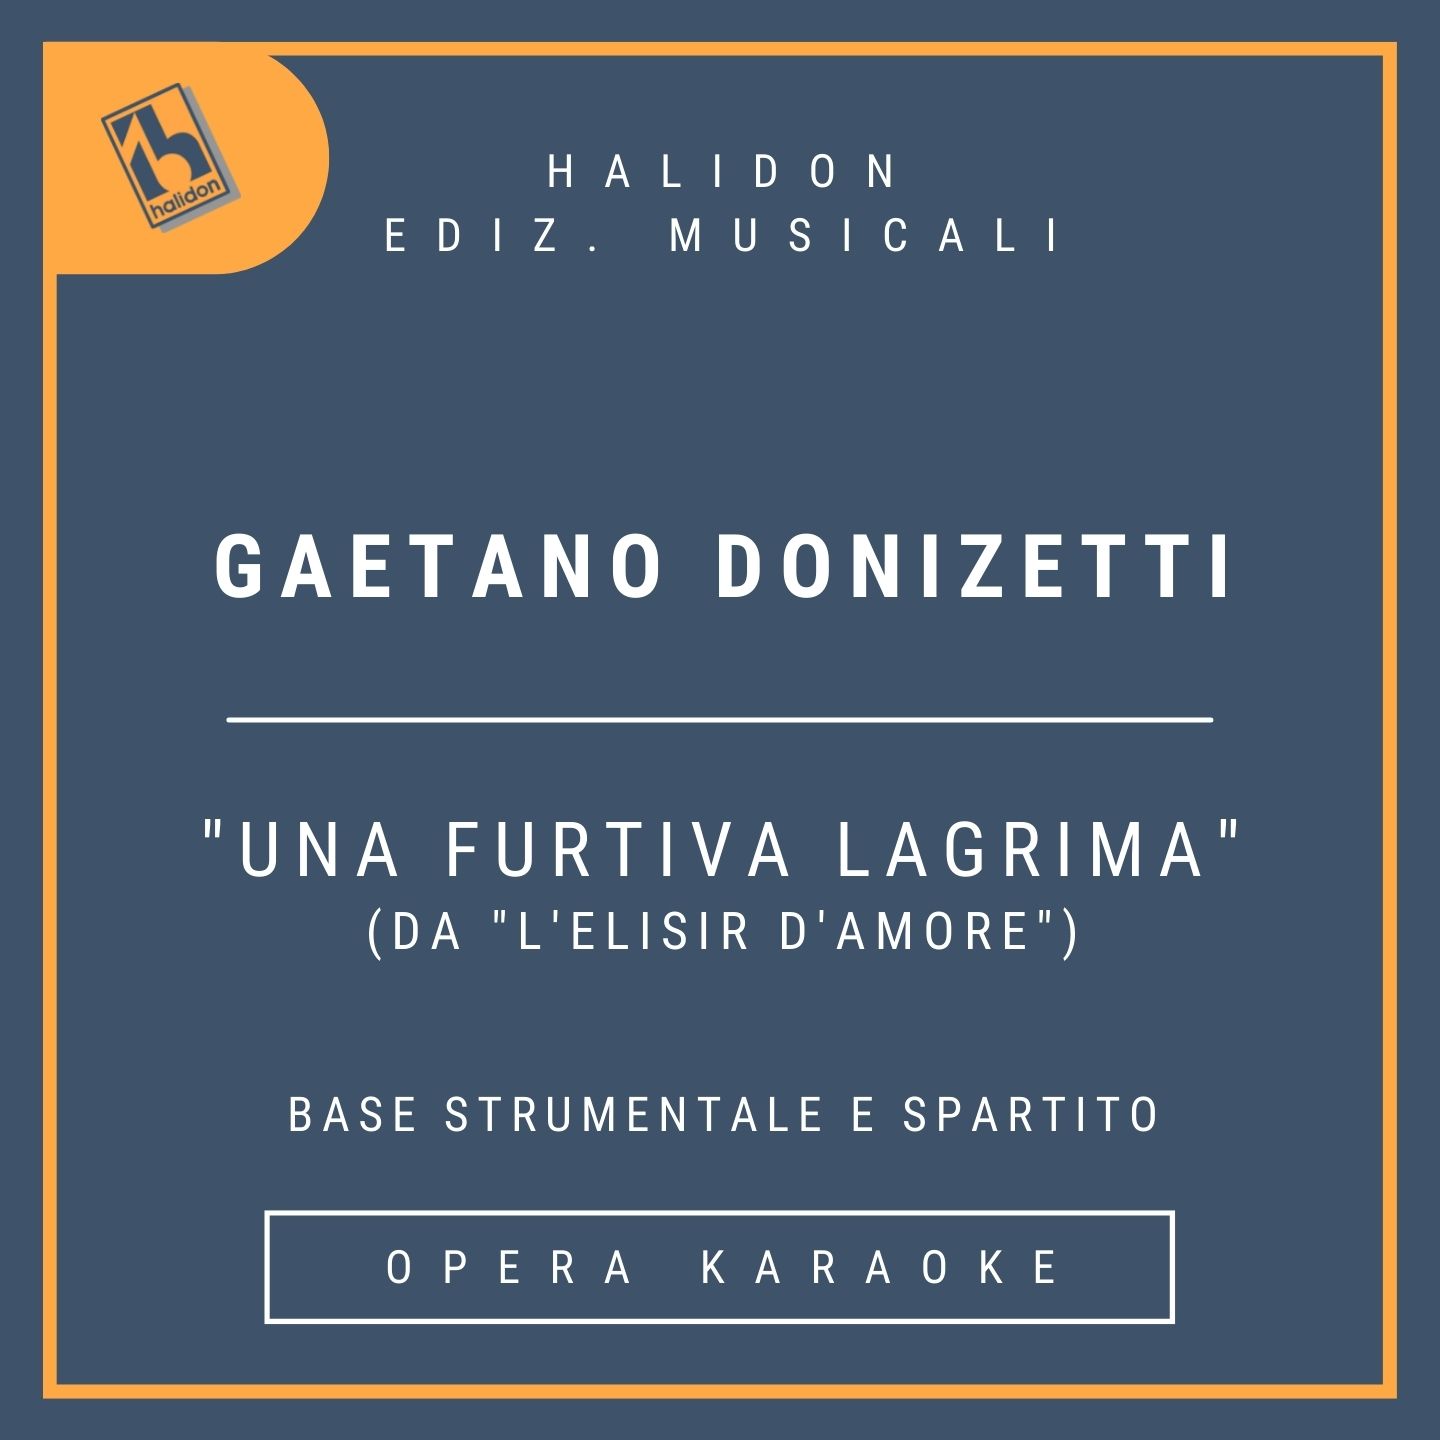 Gaetano Donizetti - Una furtiva lagrima (da 'L'elisir d'amore') - Aria di Nemorino (tenore) - Base strumentale (in tono e trasportata) + spartito